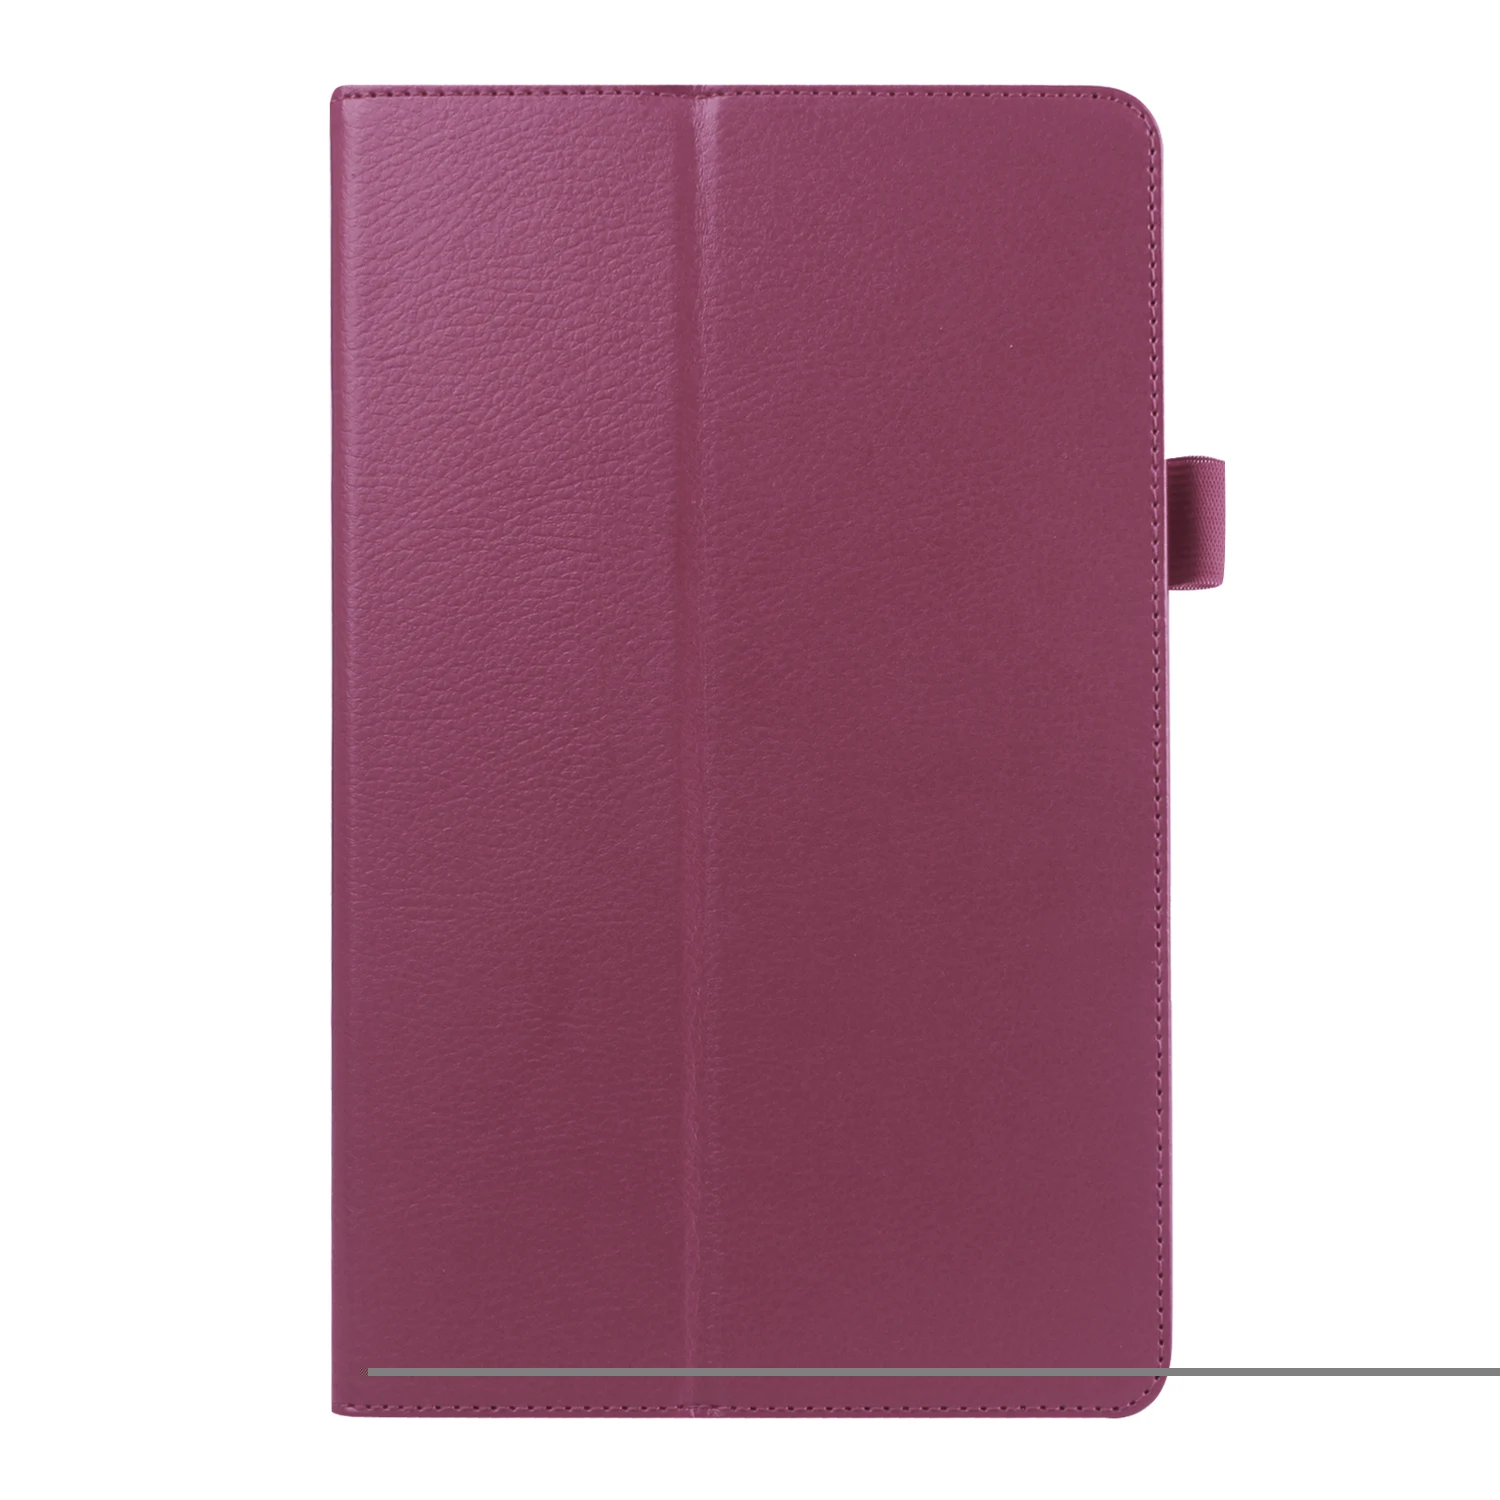 Folio PU кожаный чехол для samsung Galaxy Tab E 9,6 дюймов планшет Магнитный чехол для samsung SM-T560 SM-T561 стенд Fundas Capa - Цвет: Фиолетовый